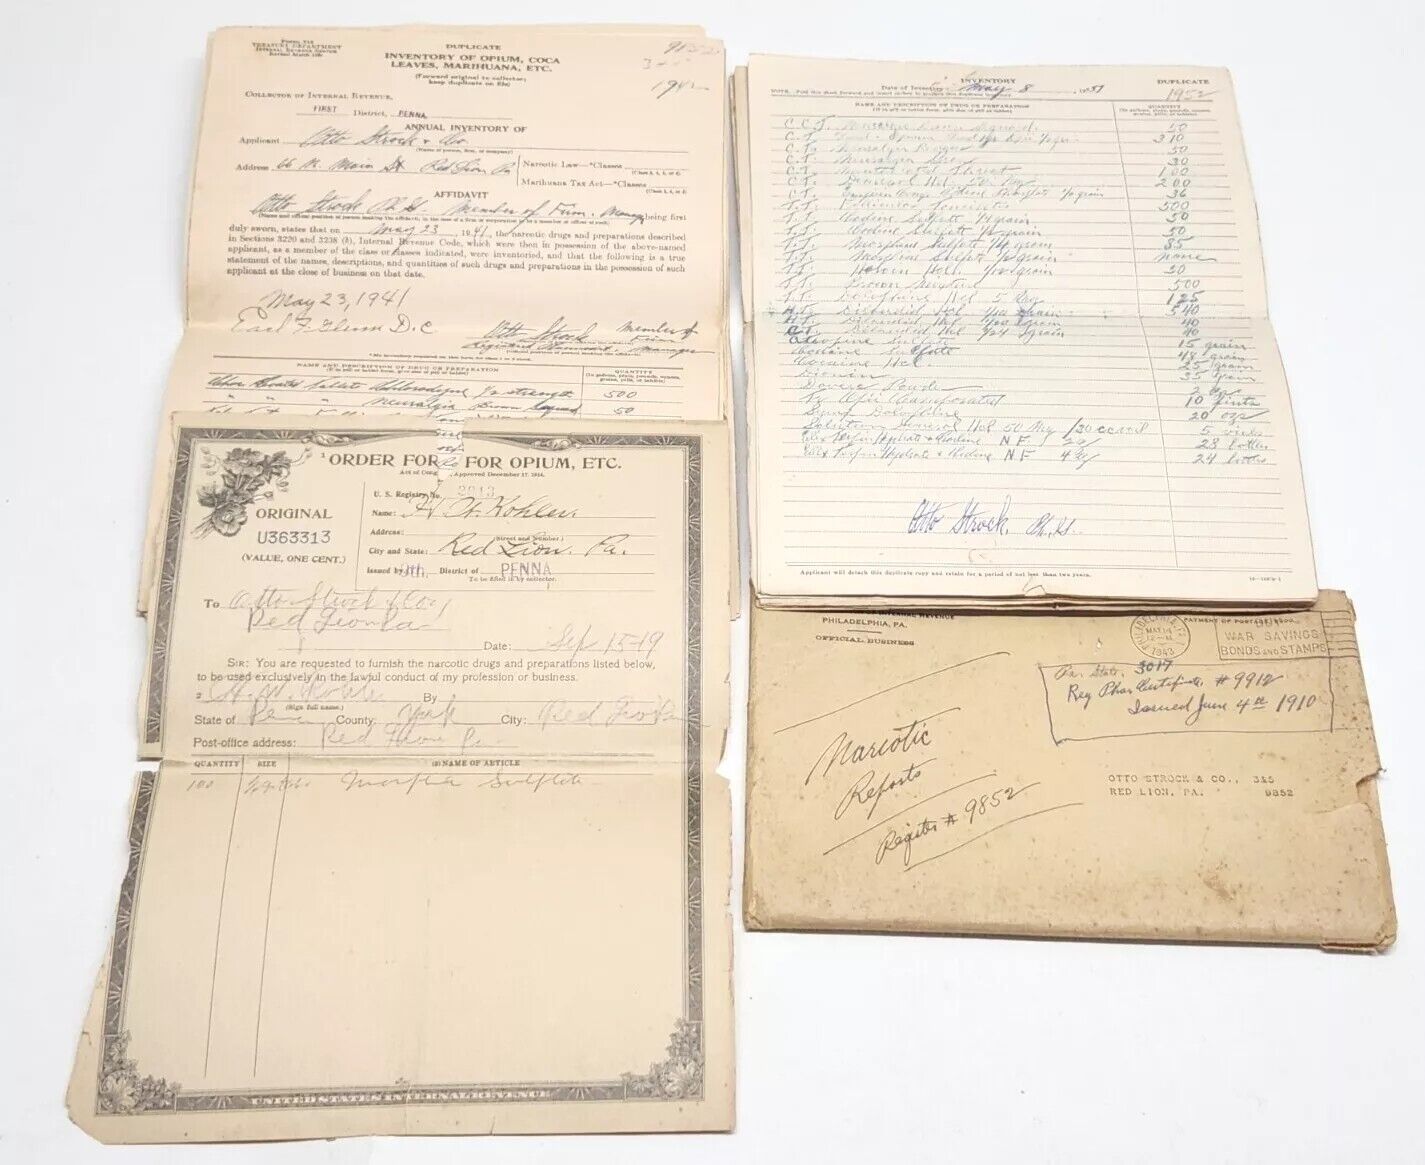 Treasury Dept IRS 30 Inventory of Opium Etc Forms & Original Envelope 1940s/50s